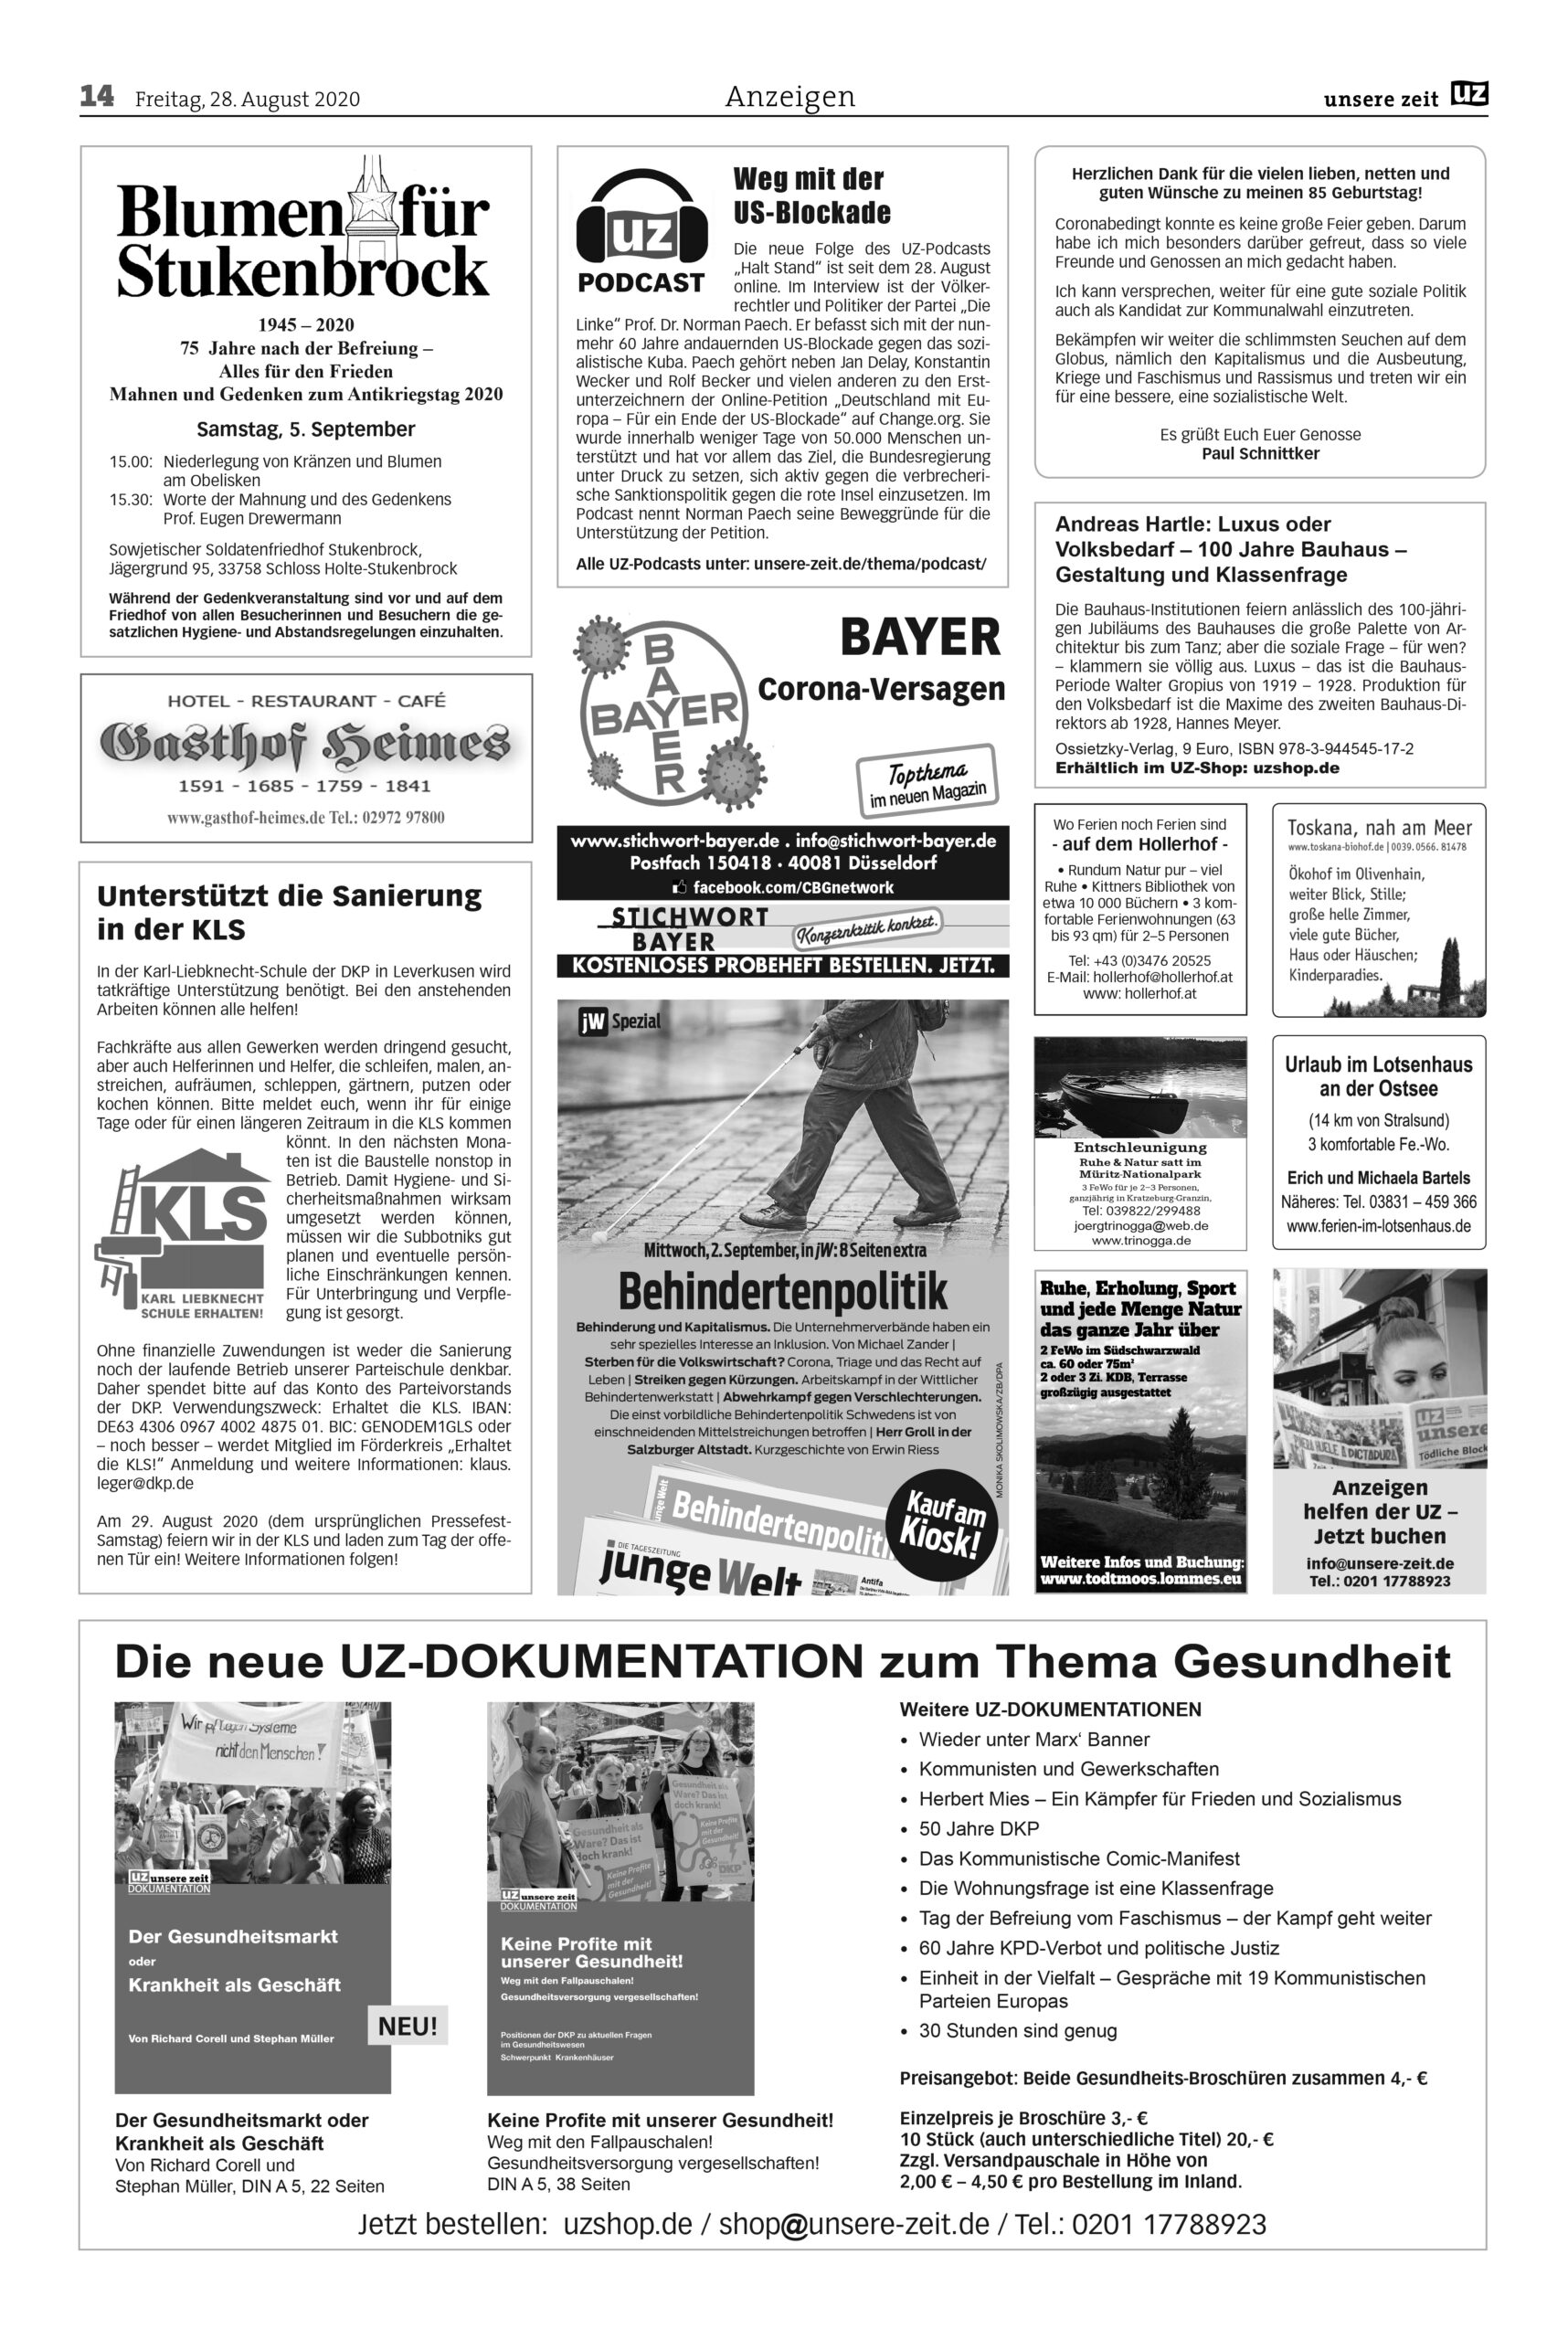 UZ 35 14 scaled - Anzeigen 2020-35 - Anzeigen - Anzeigen